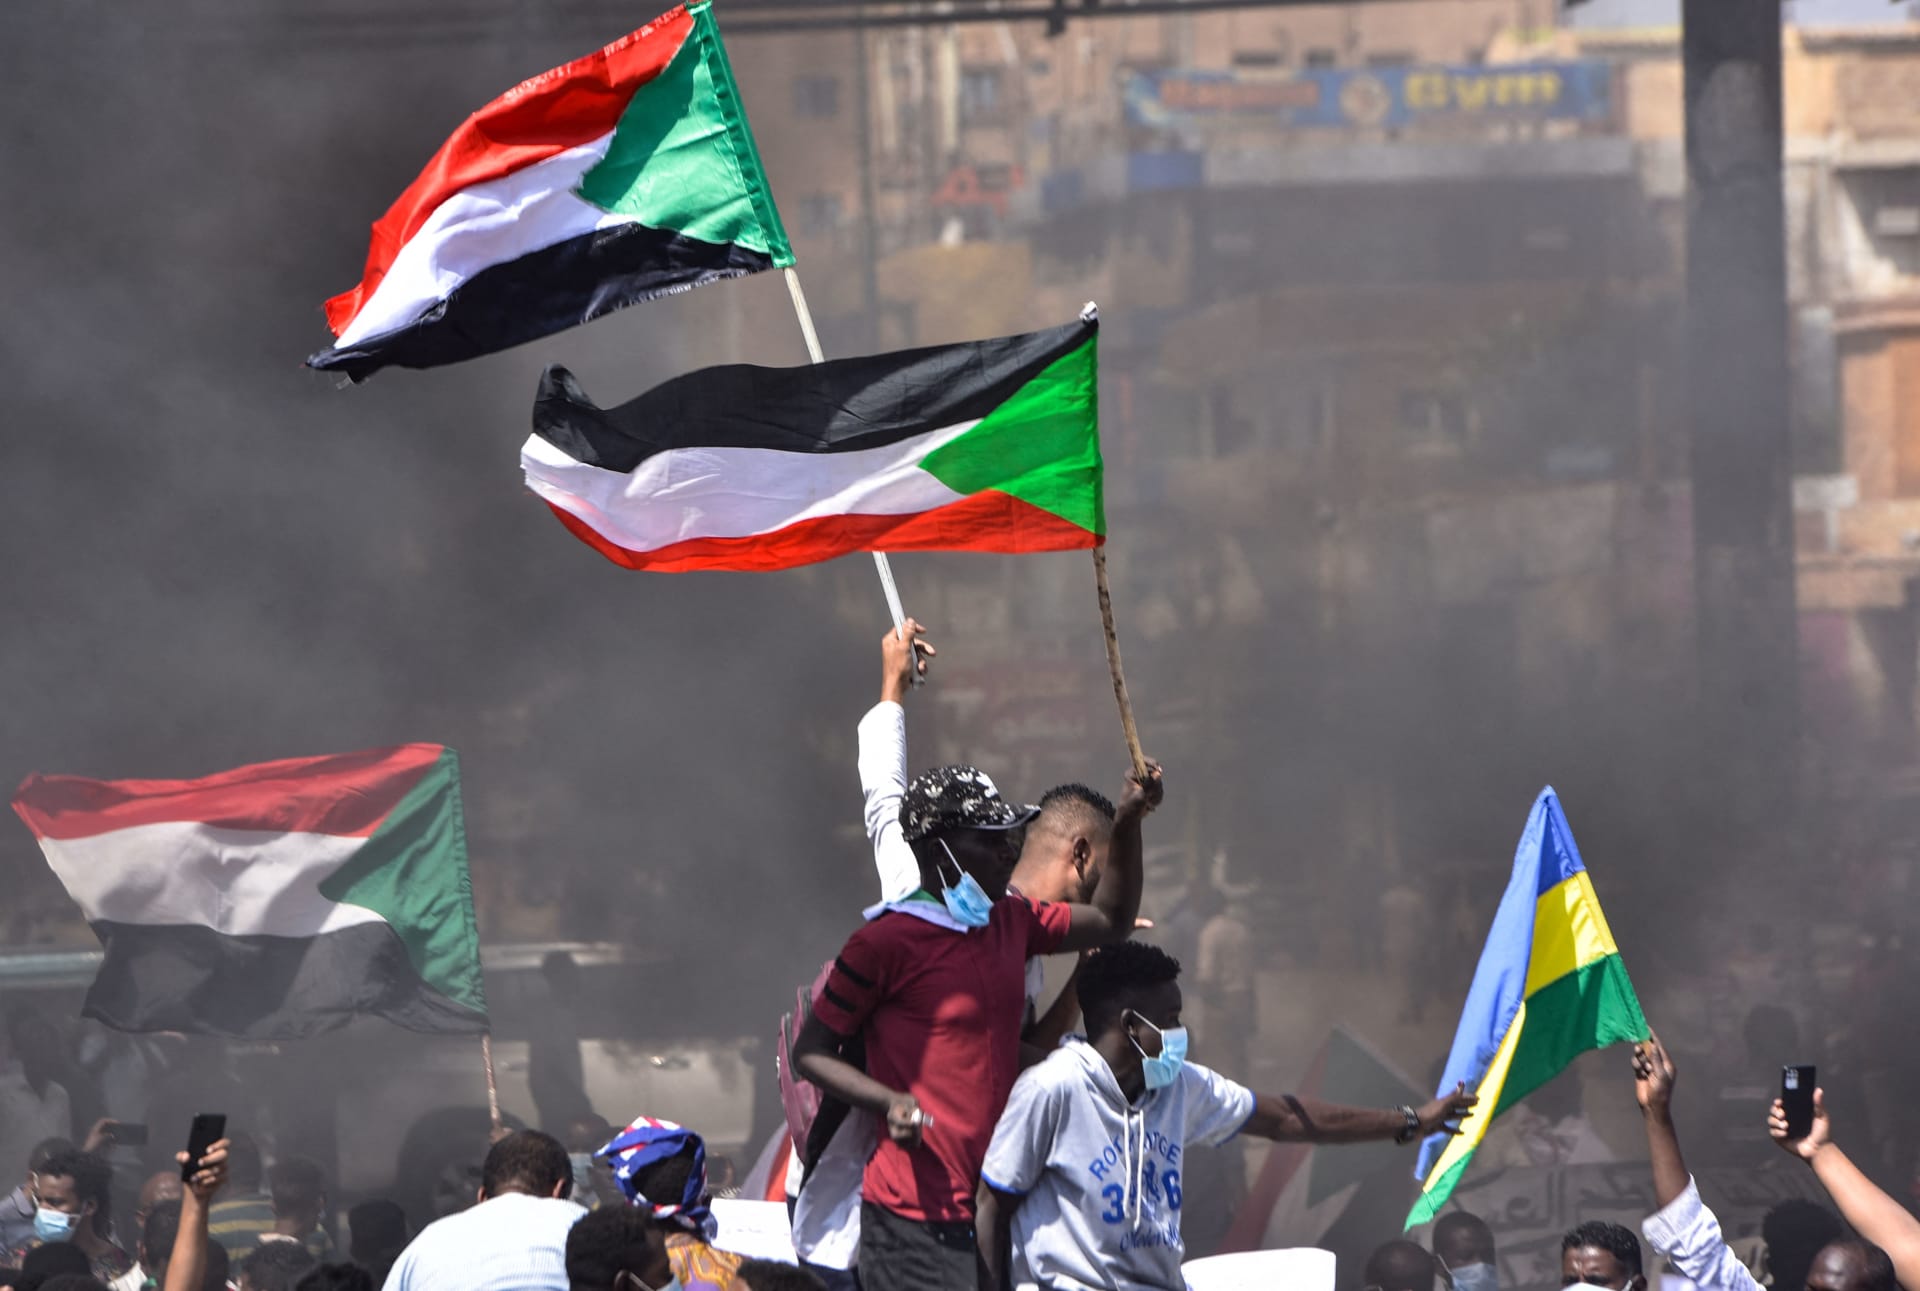 متظاهرون سودانيون يرفعون الأعلام الوطنية أثناء مشاركتهم في احتجاج بمدينة الخرطوم بحري، المدينة التوأم الشمالية للعاصمة، للمطالبة بانتقال الحكومة إلى الحكم المدني، في 21 أكتوبر / تشرين الأول 2021.